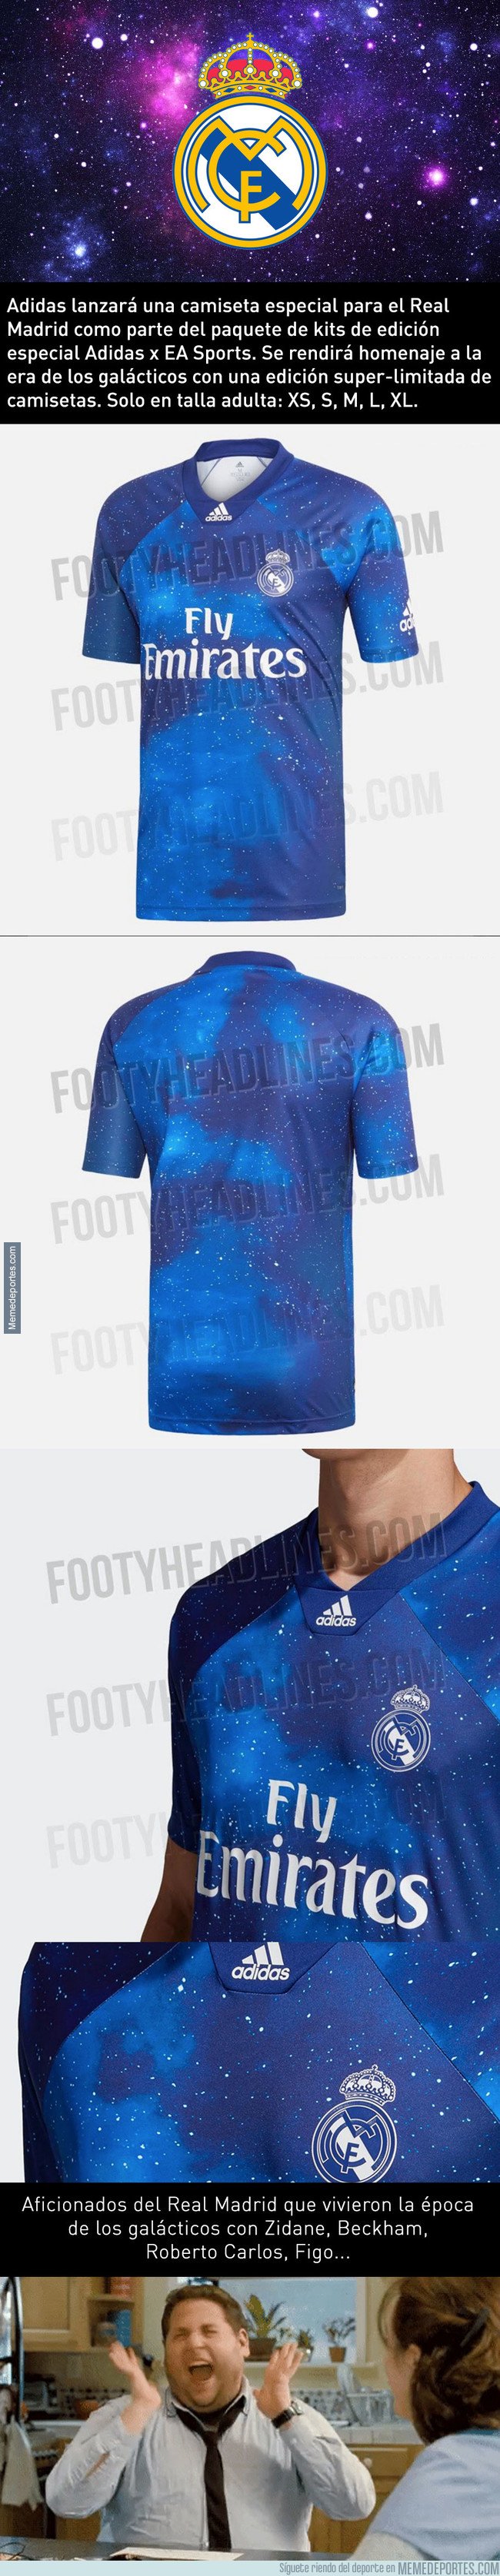 1057590 - Adidas lanzará una camiseta exclusiva del Real Madrid galáctica, y si eres aficionado merengue, LA VAS A NECESITAR